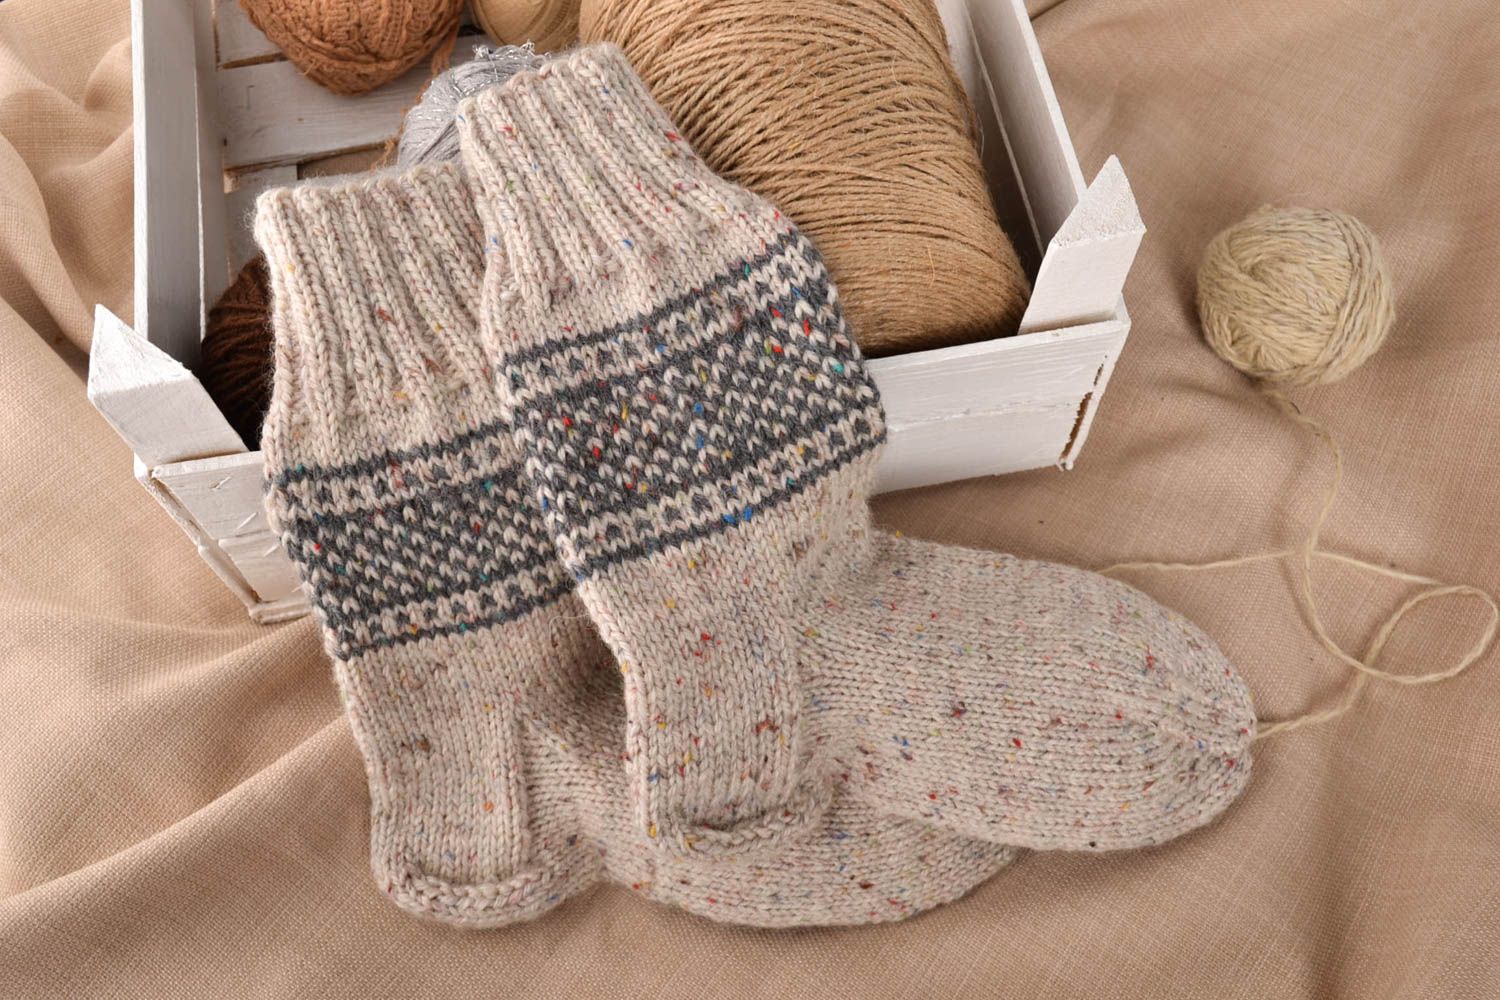 Handmade knitted socks warm socks winter socks gifts for men winter clothing photo 1